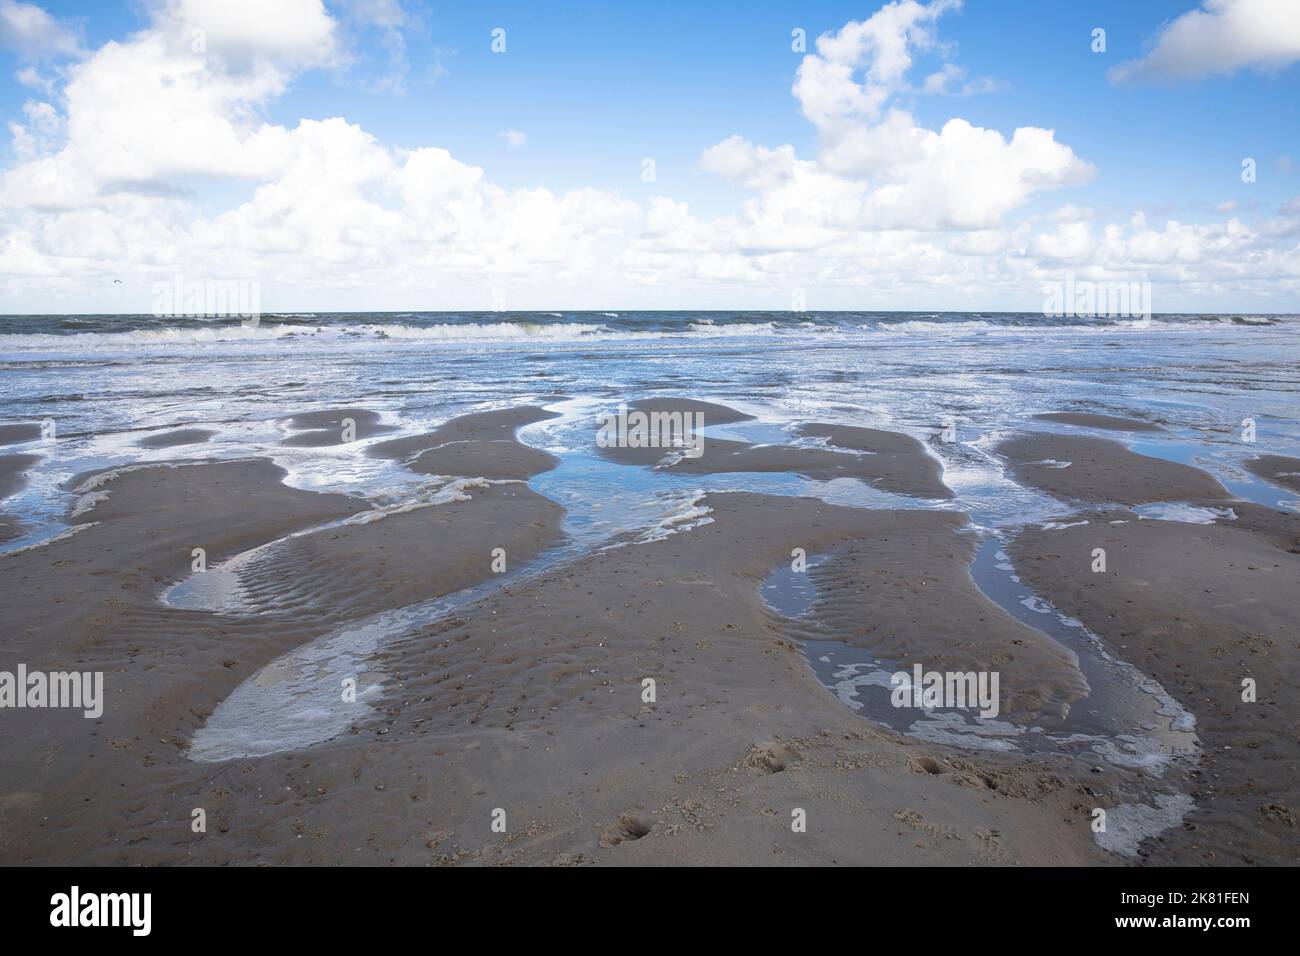 Netherlands, Zeeland, rising water on the beach in Oostkapelle on the peninsula Walcheren. Niederlande, Zeeland, auflaufendes Wasser am Strand von Oos Stock Photo